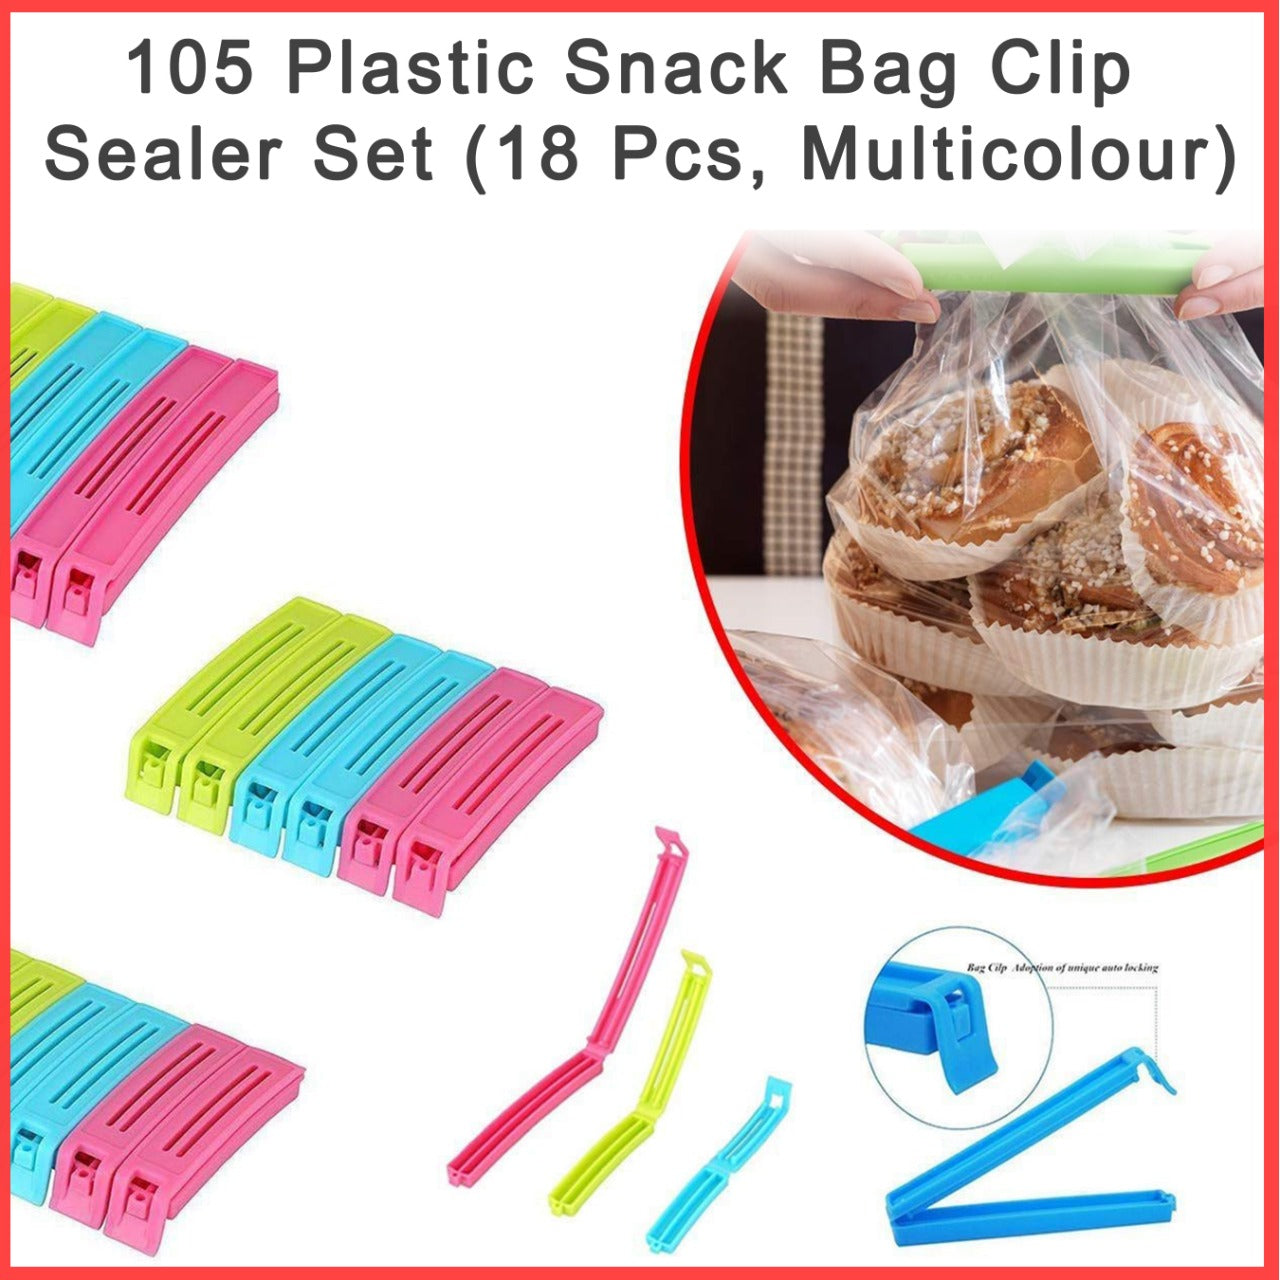 0105 Plastic Snack Bag Clip Sealer Set (18 Pcs, Multicolour) – Oh